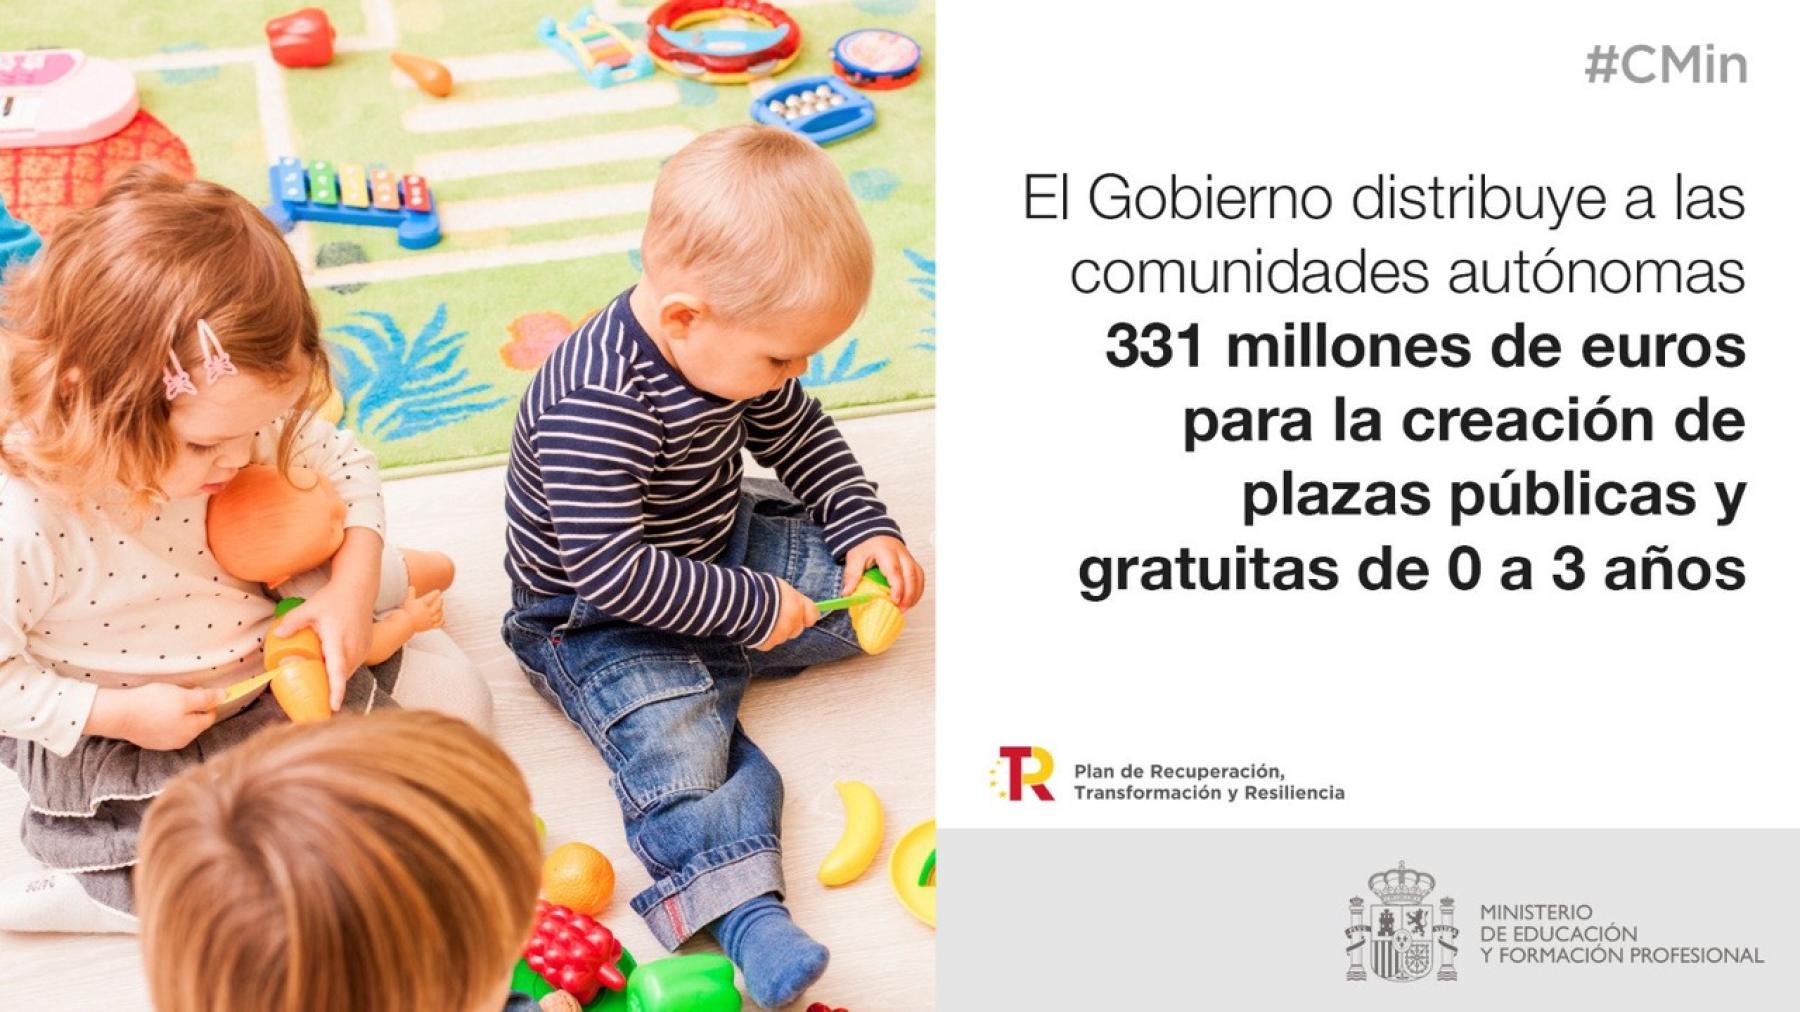 El Gobierno destina más de 24 millones de euros a Castilla-La Mancha en materia de Educación Infantil, formación de trabajadores y atención a estudiantes ucranianos